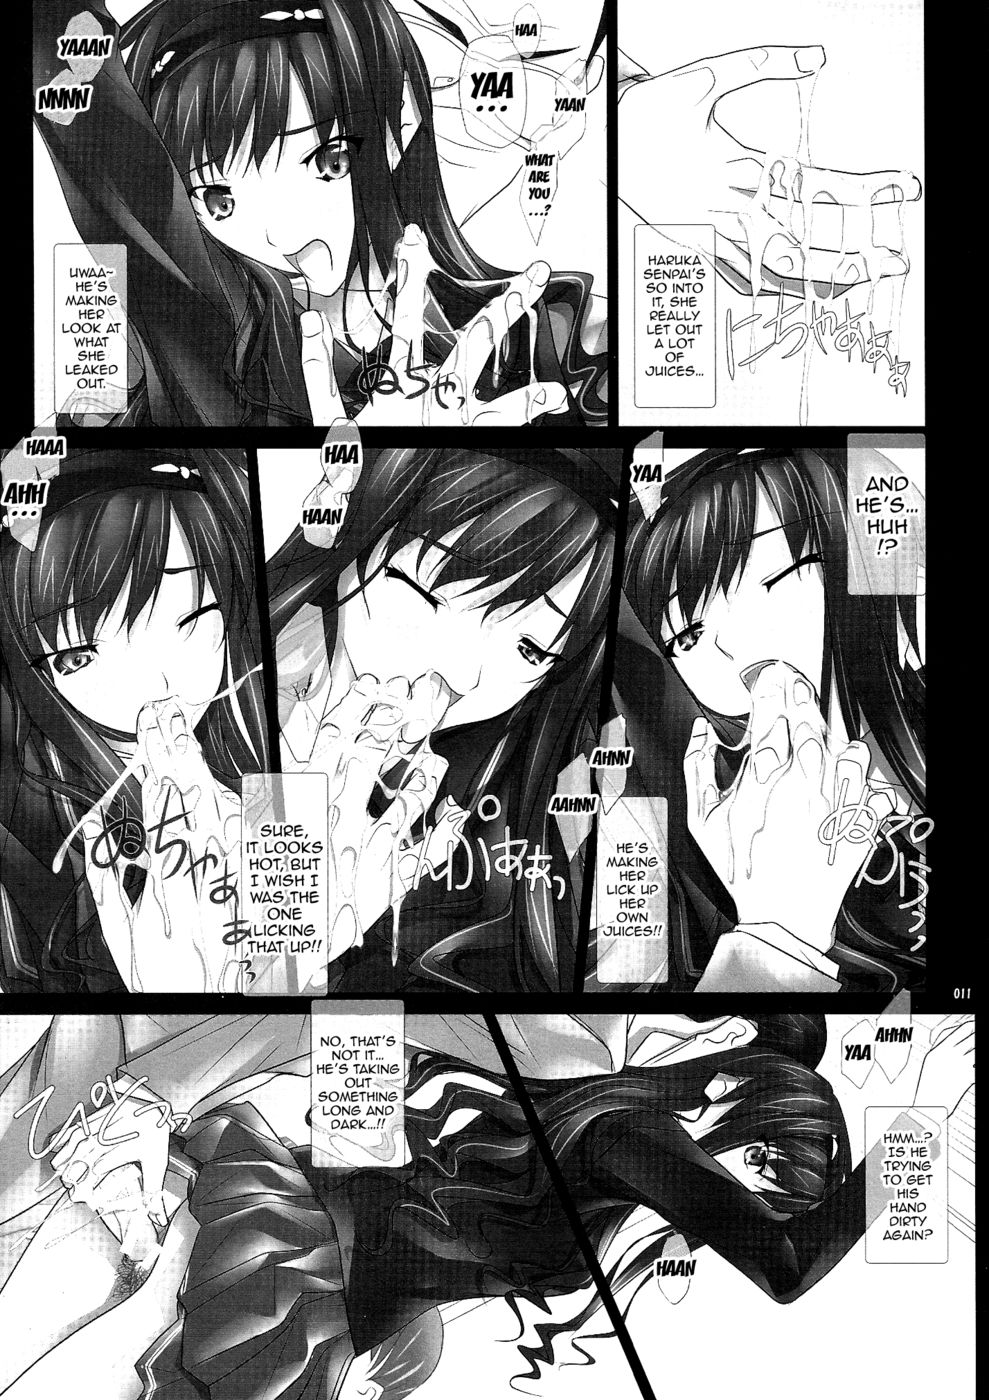 Hentai Manga Comic-Haruka-senpai's... Molester Train GOO!-Read-10